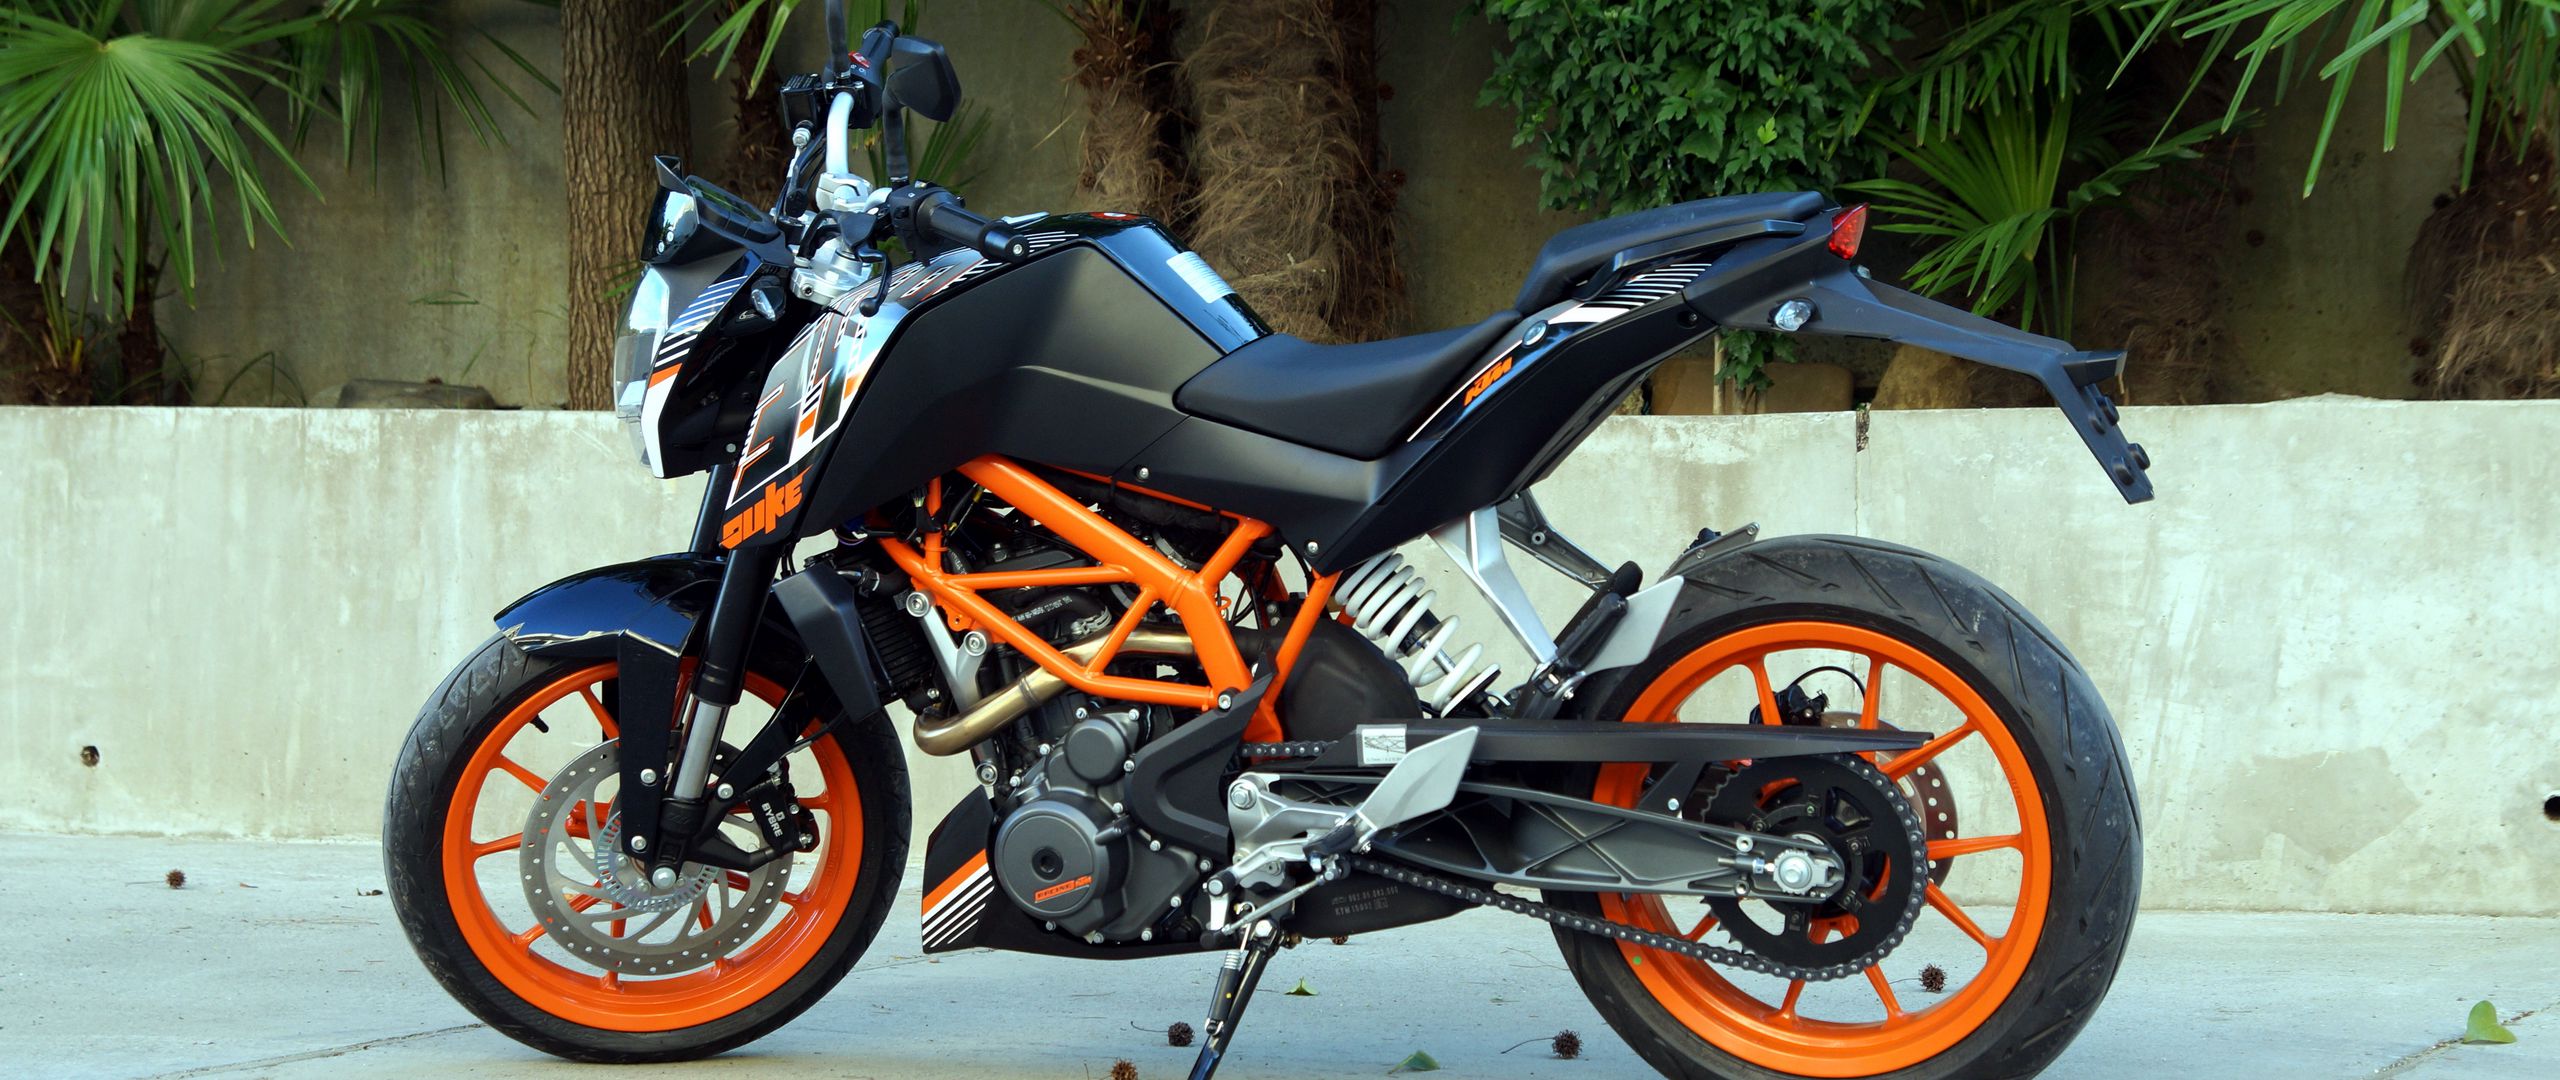 2560x1080 Wallpaper ktm, motorcycle, bike, black, orange, moto